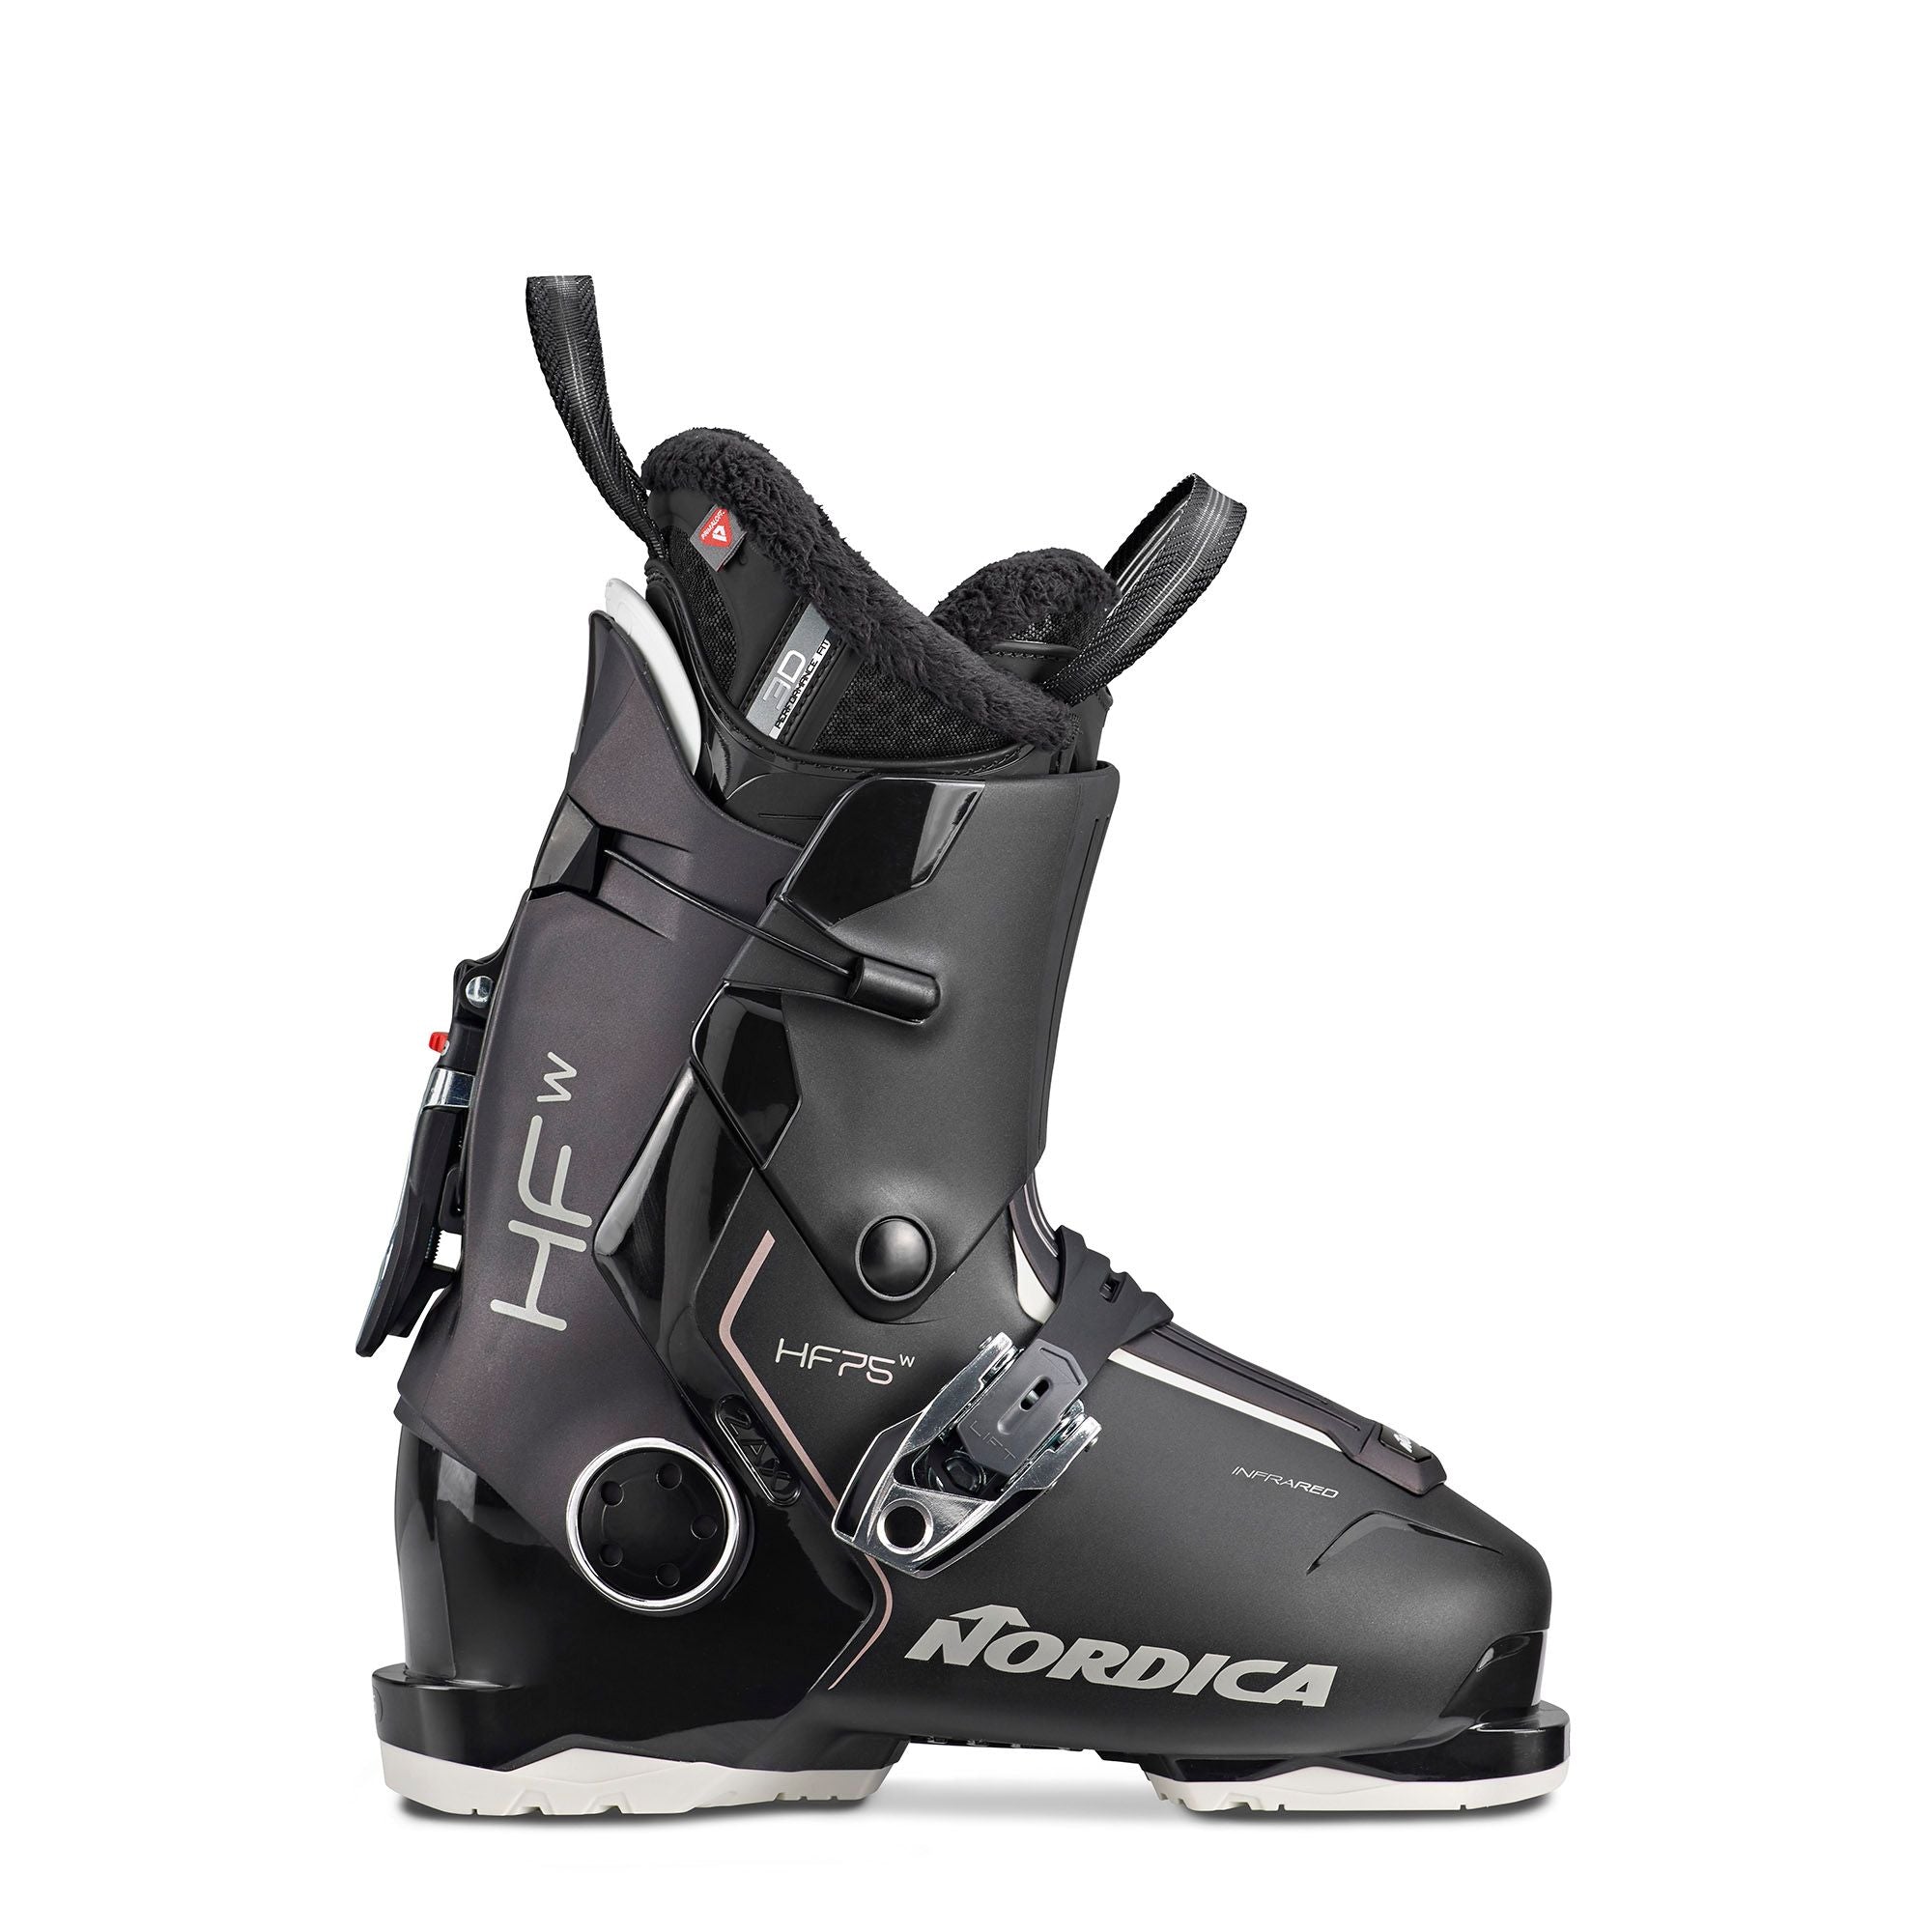 Ski Equipment, Ski Boots